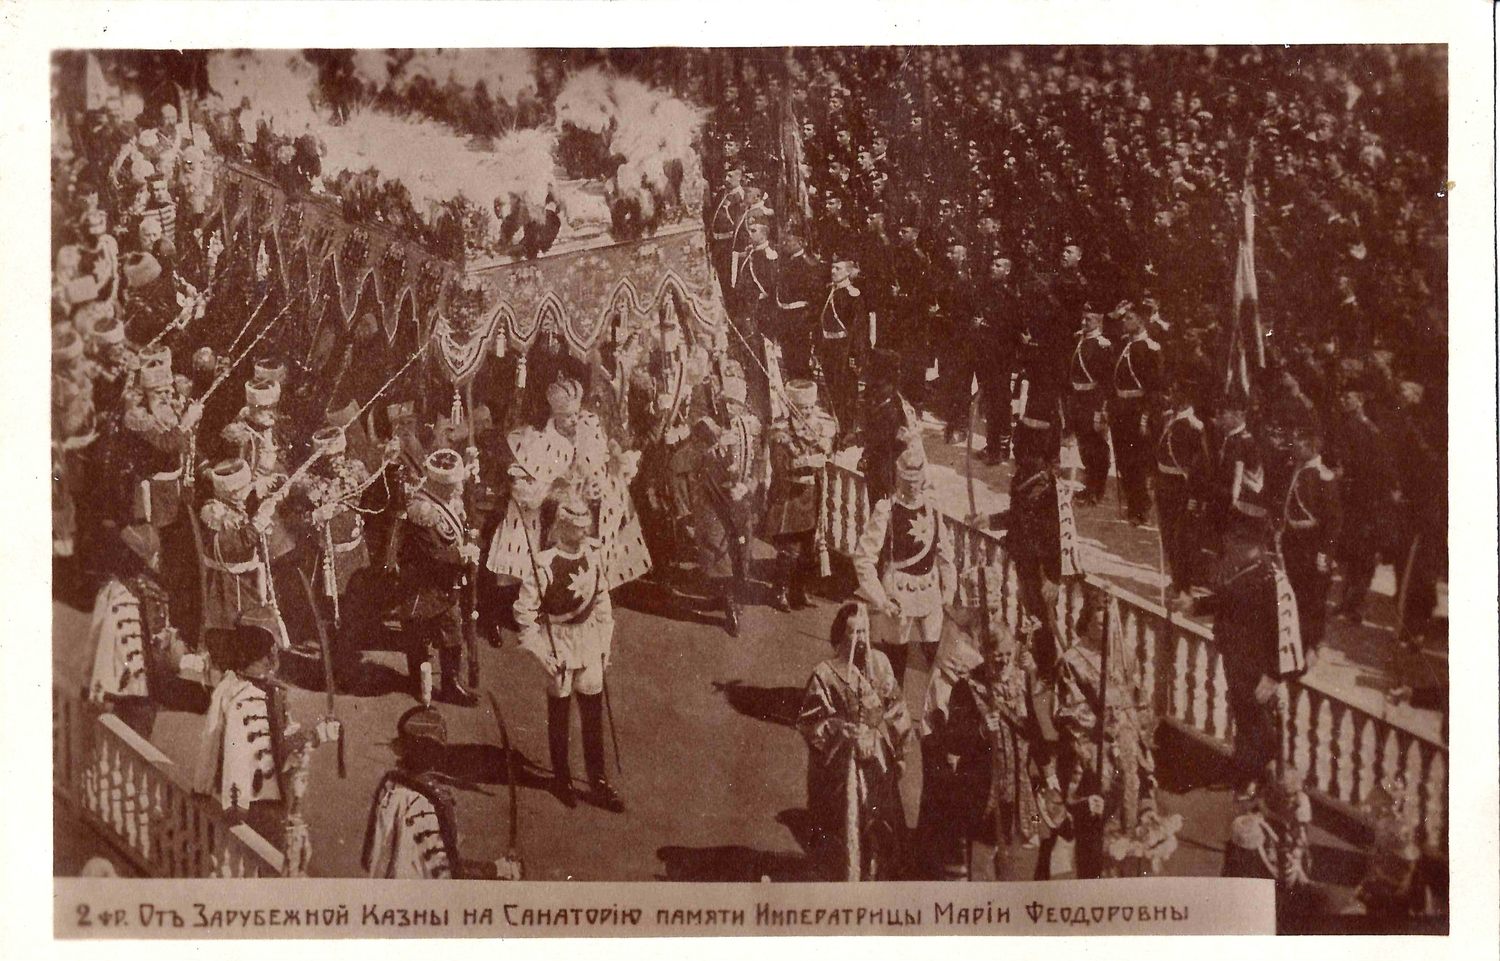 Открытка «Коронация императора Николая II». Издание в пользу санатория памяти императрицы Марии Фёдоровны, конец 1920-х годов.